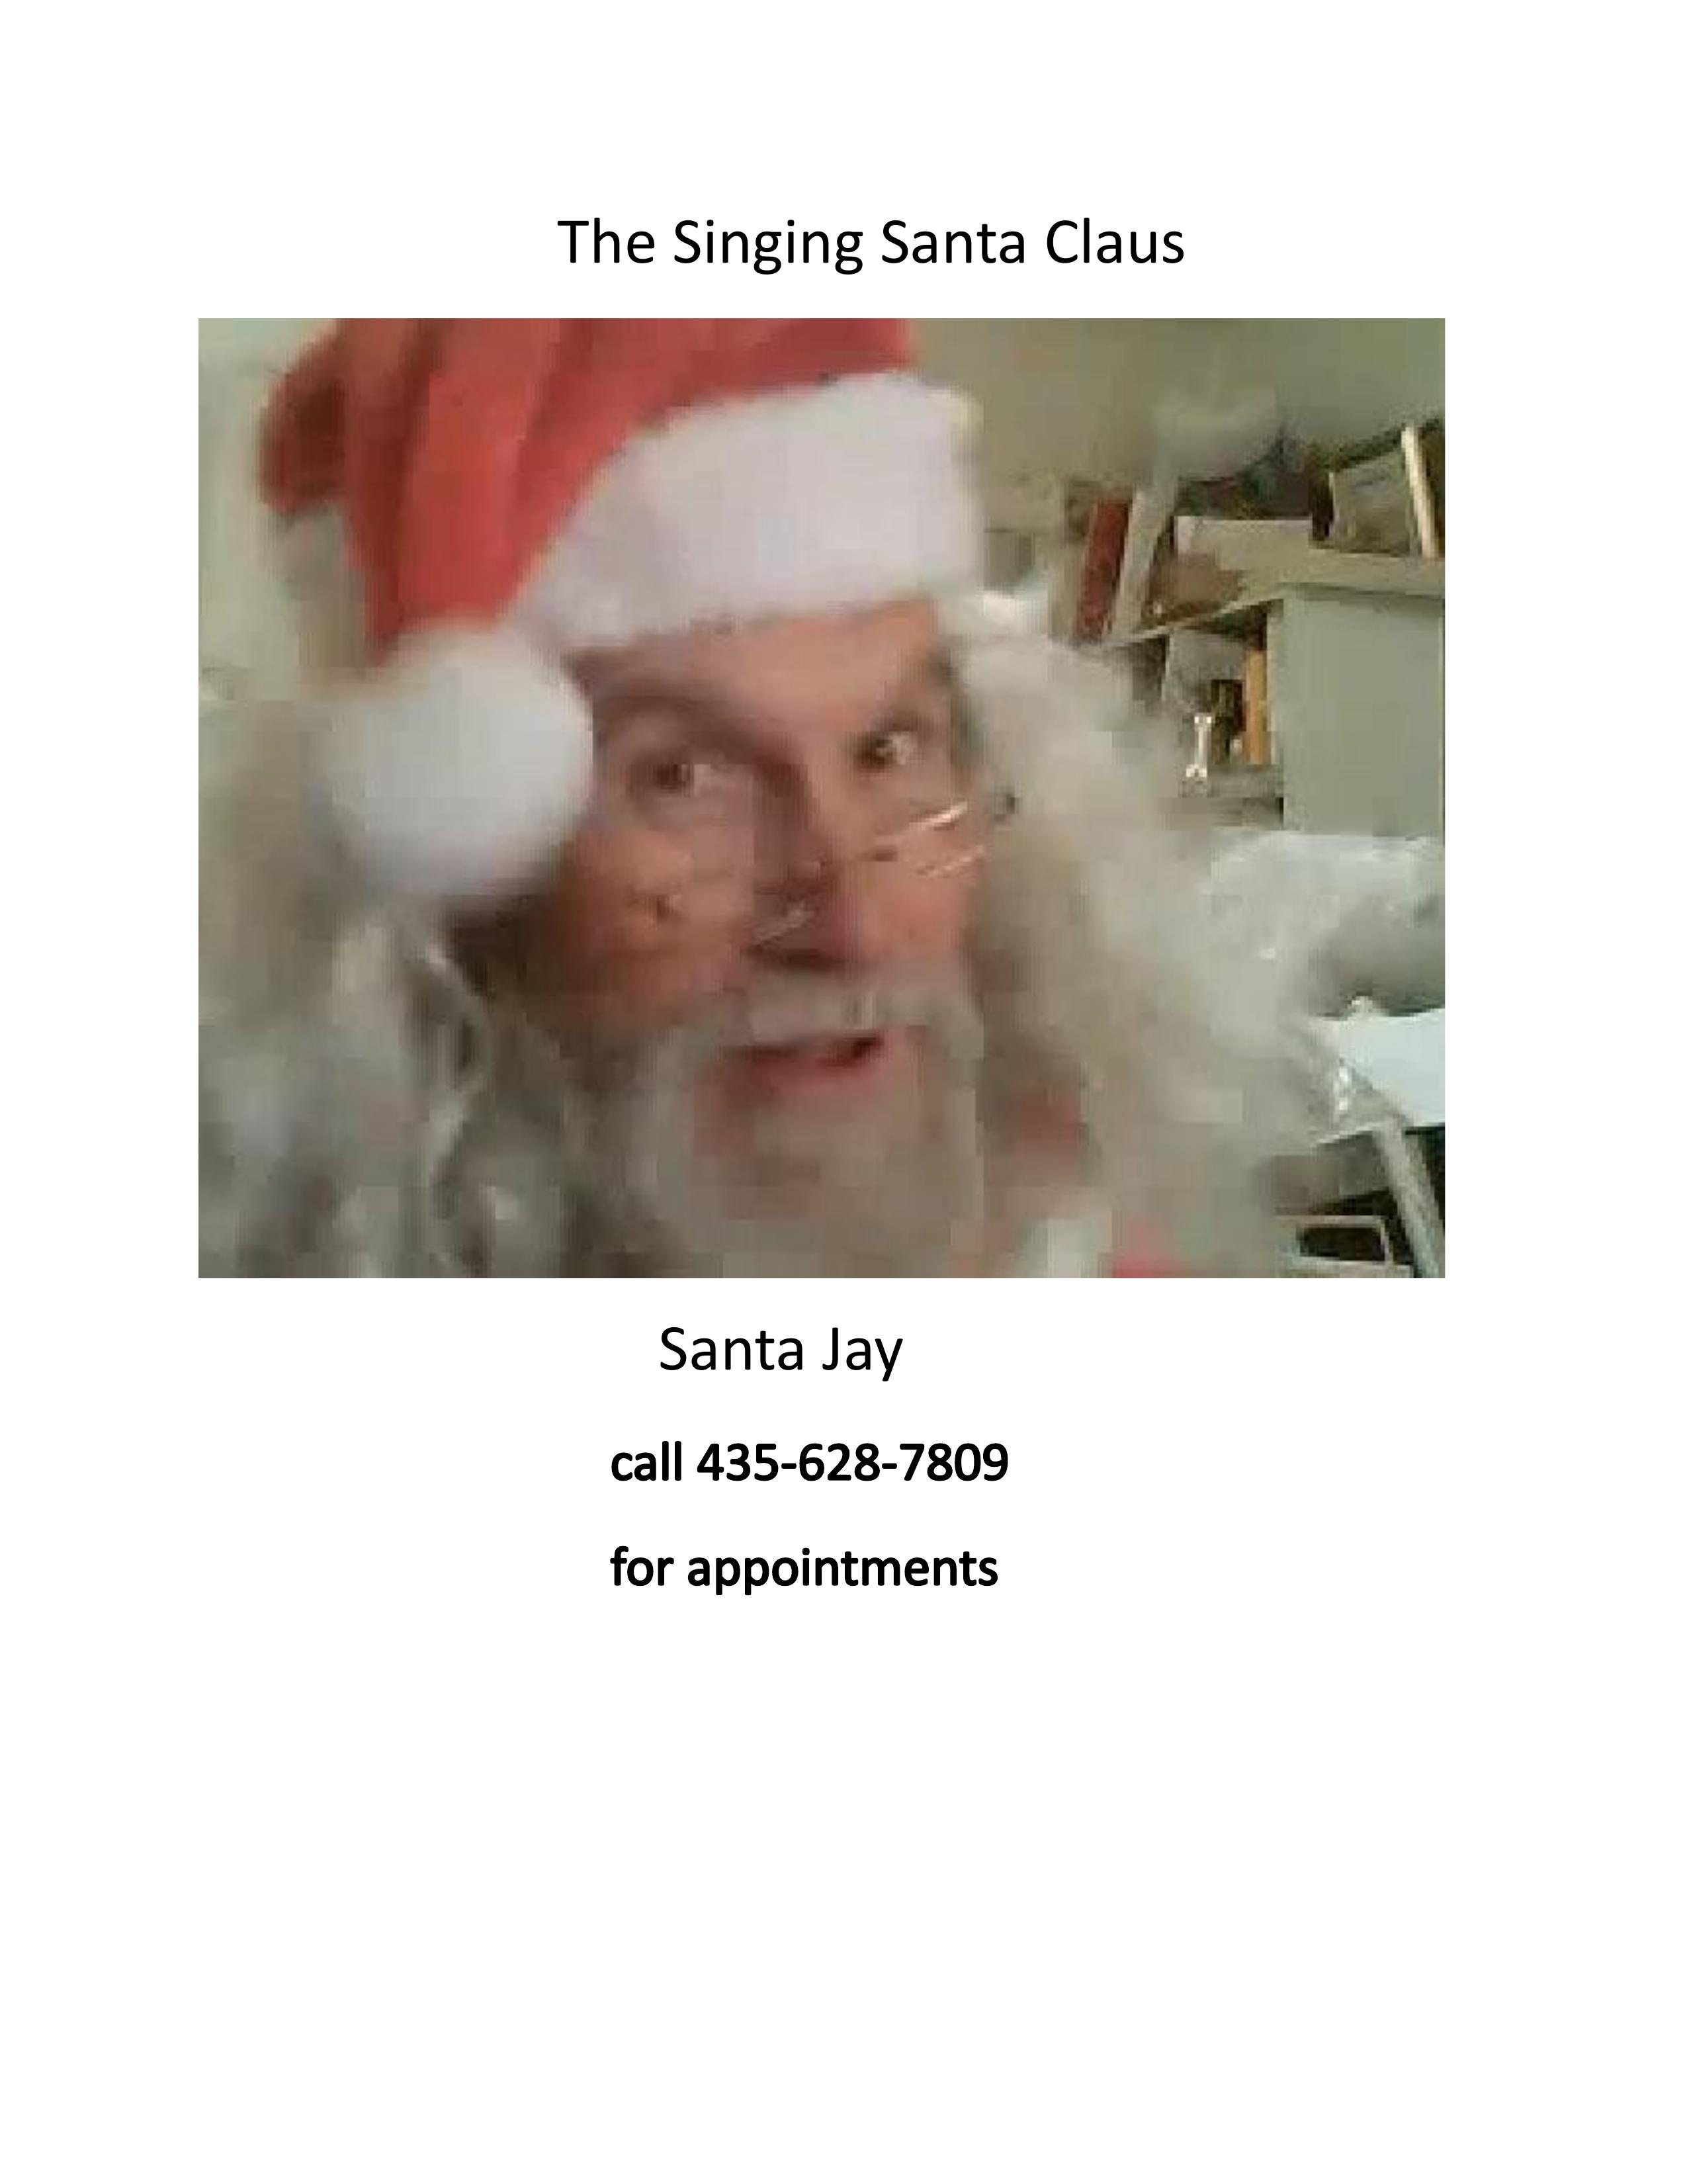 The Singing Santa Claus card (2)